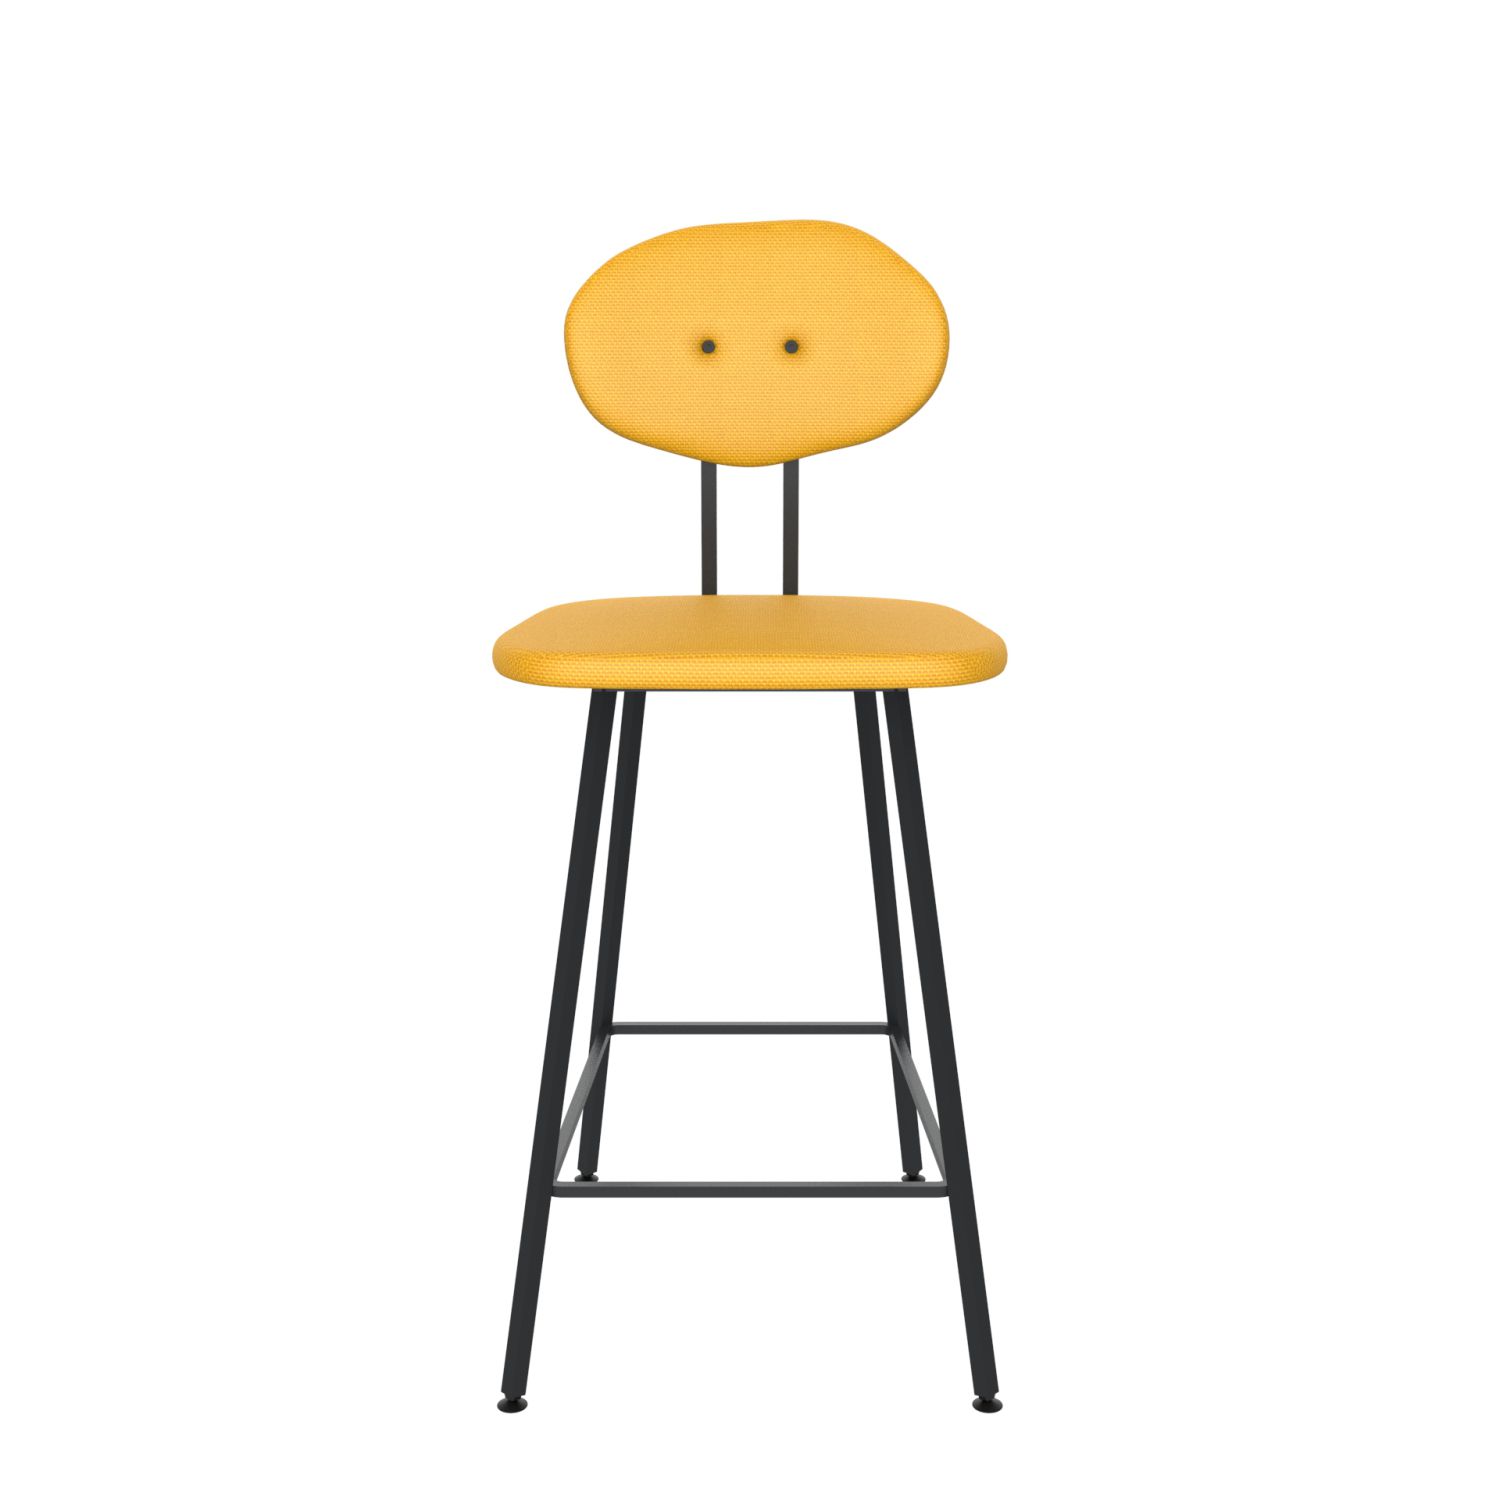 maarten baas barstool 65 cm without armrests backrest d lemon yellow 051 frame black